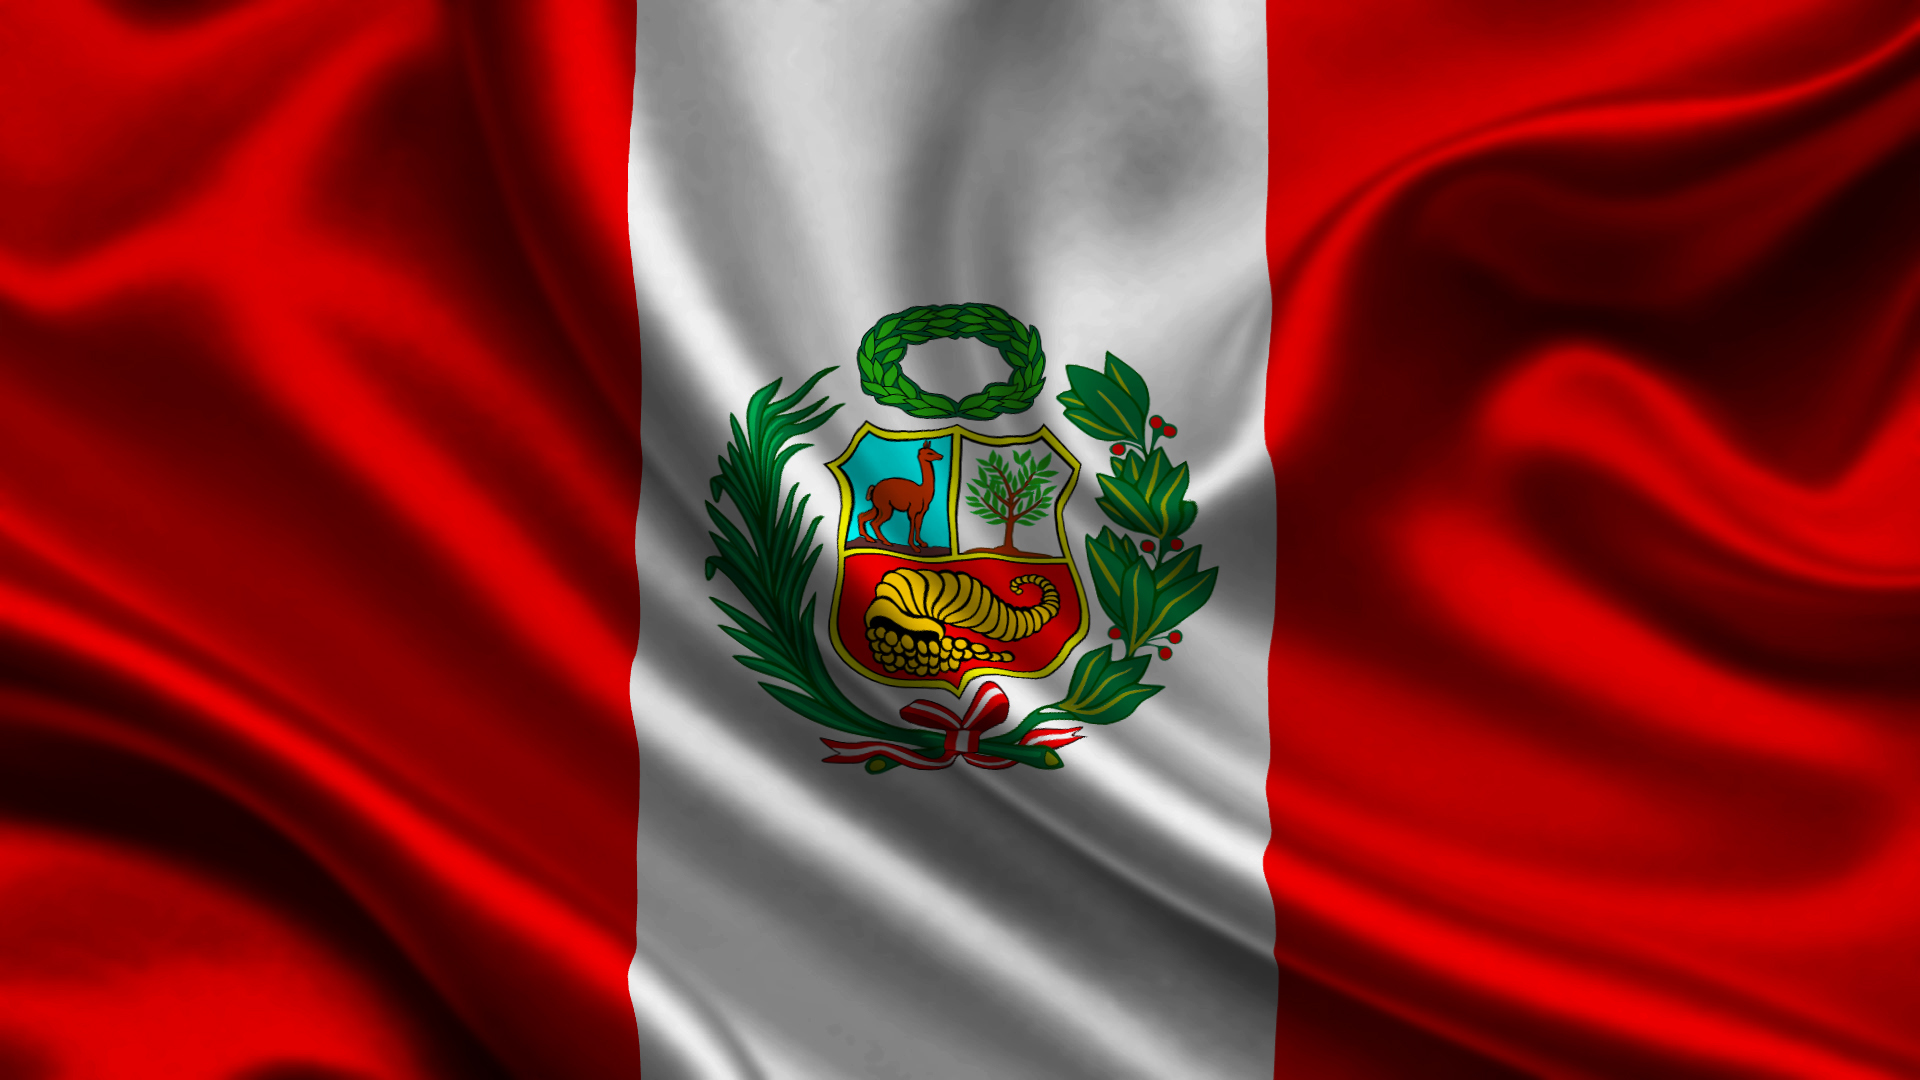 Los mejores fondos de pantalla de Bandera Peruana para la pantalla del teléfono